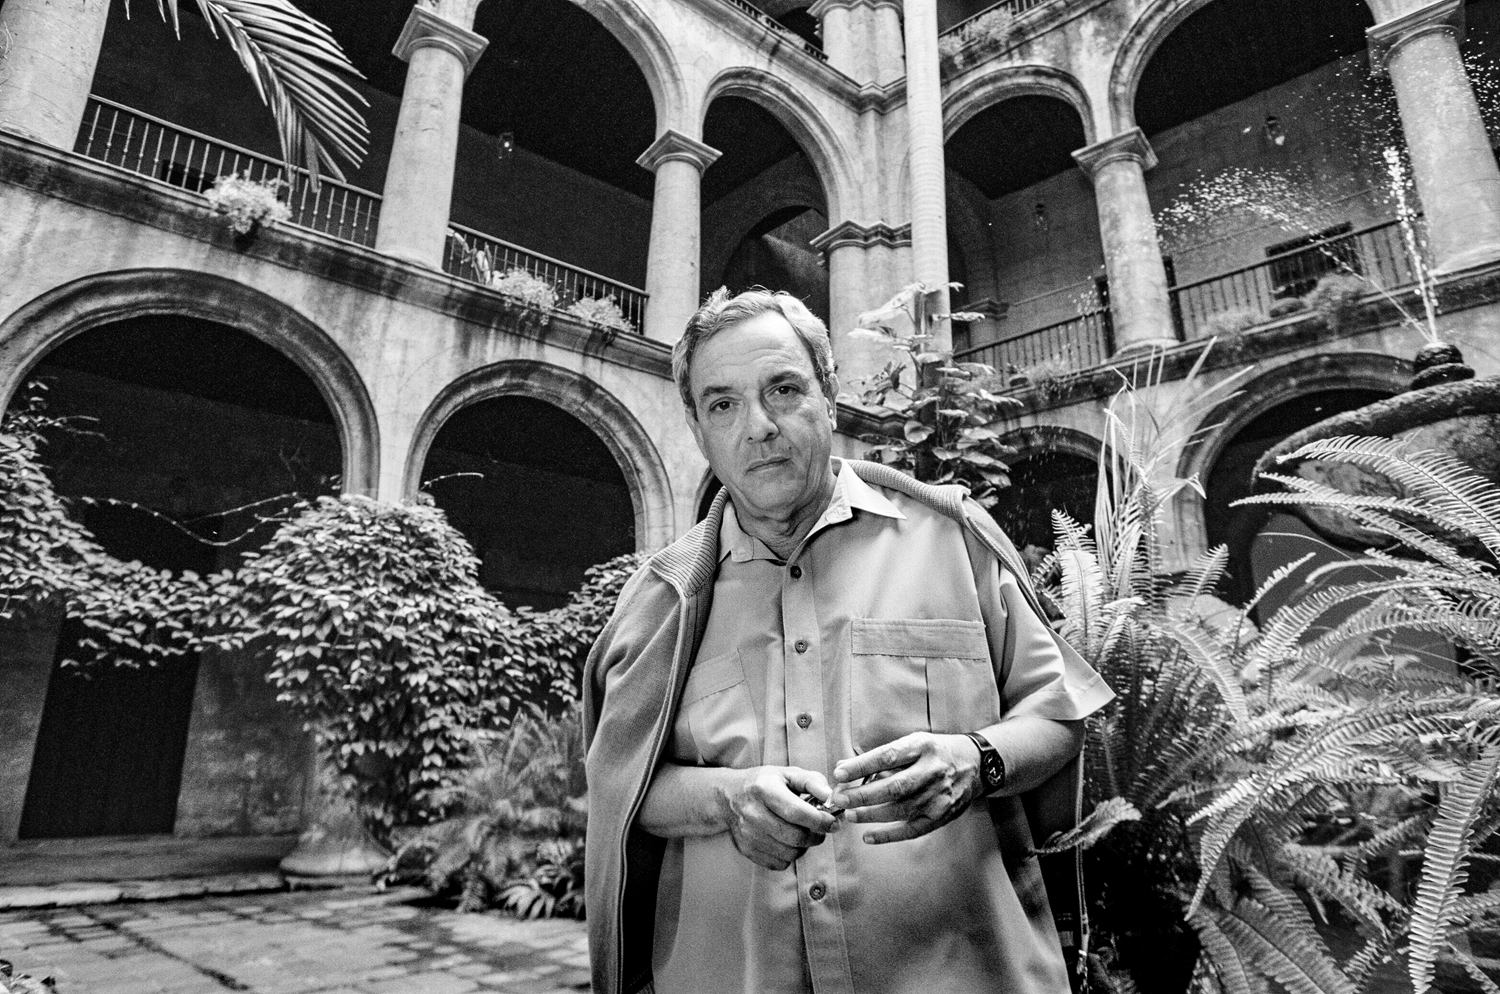 EUSEBIO LEAL SPENGLER.
Historiador de la Habana, direttore generale del Plan Maestro de la revitalizacion de la Habana VeJa e uno dei maggior artefici del rinnovamento del centro storico della capitale: